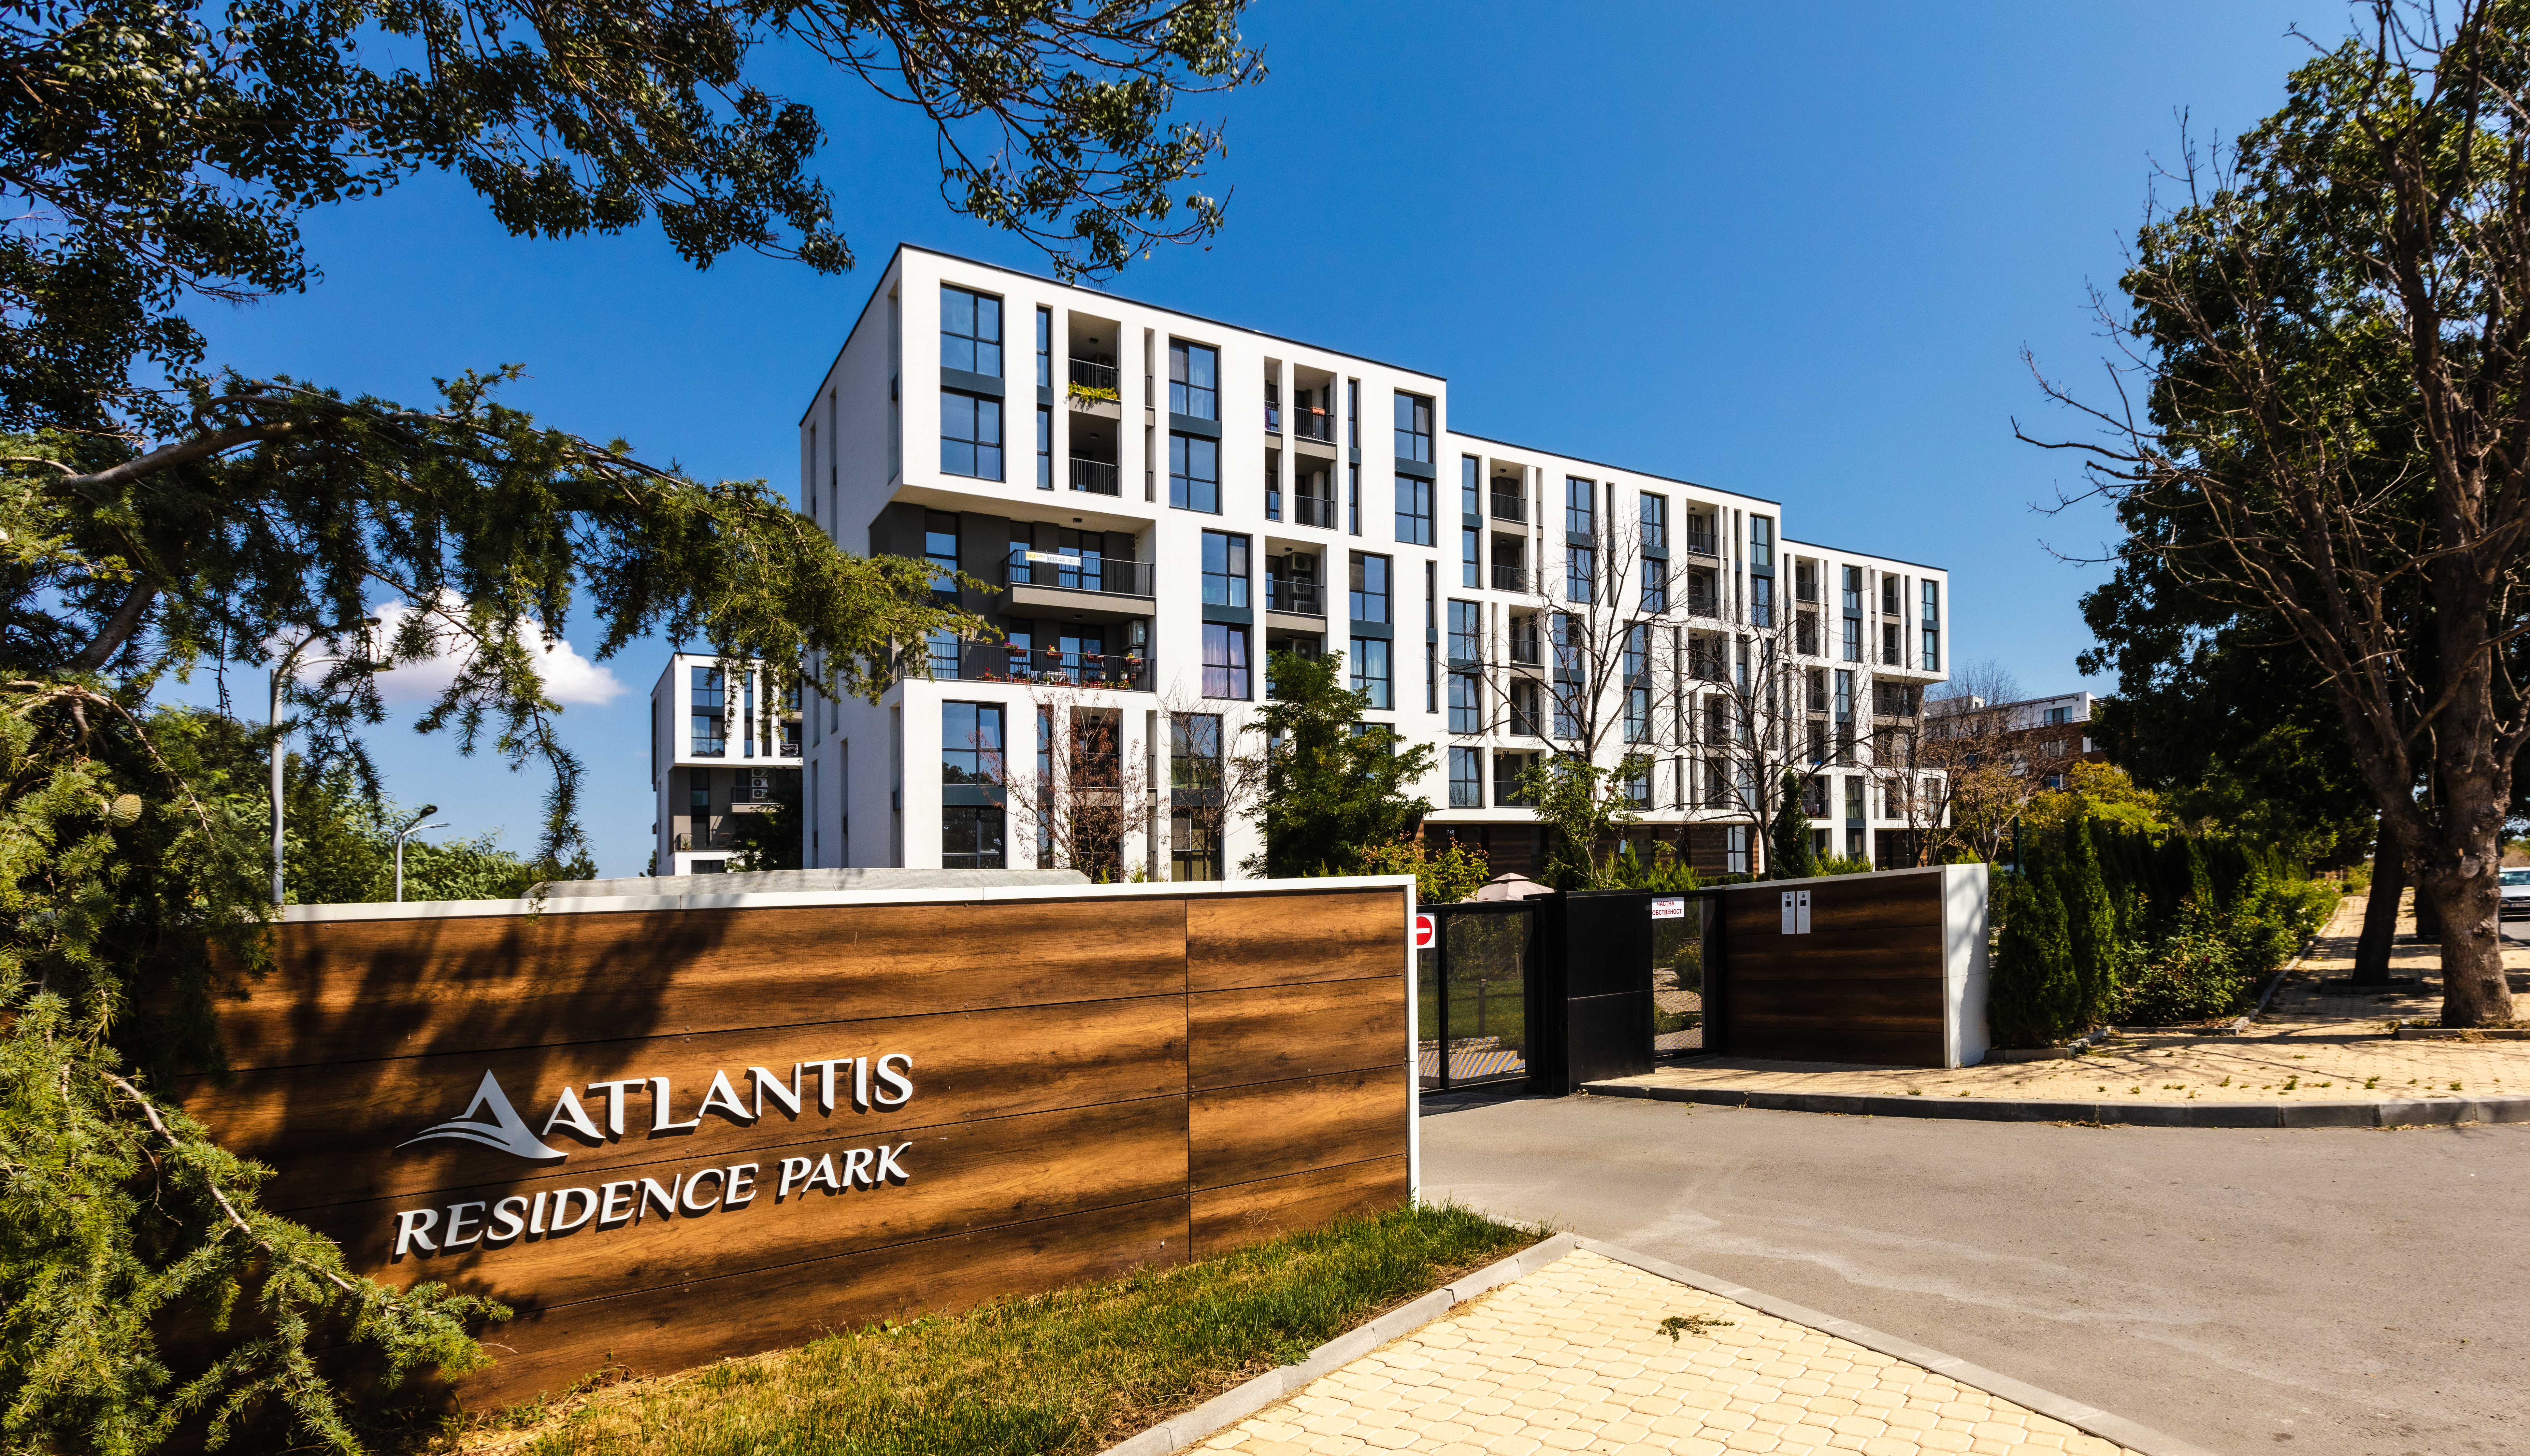 Atlantis Residence Park